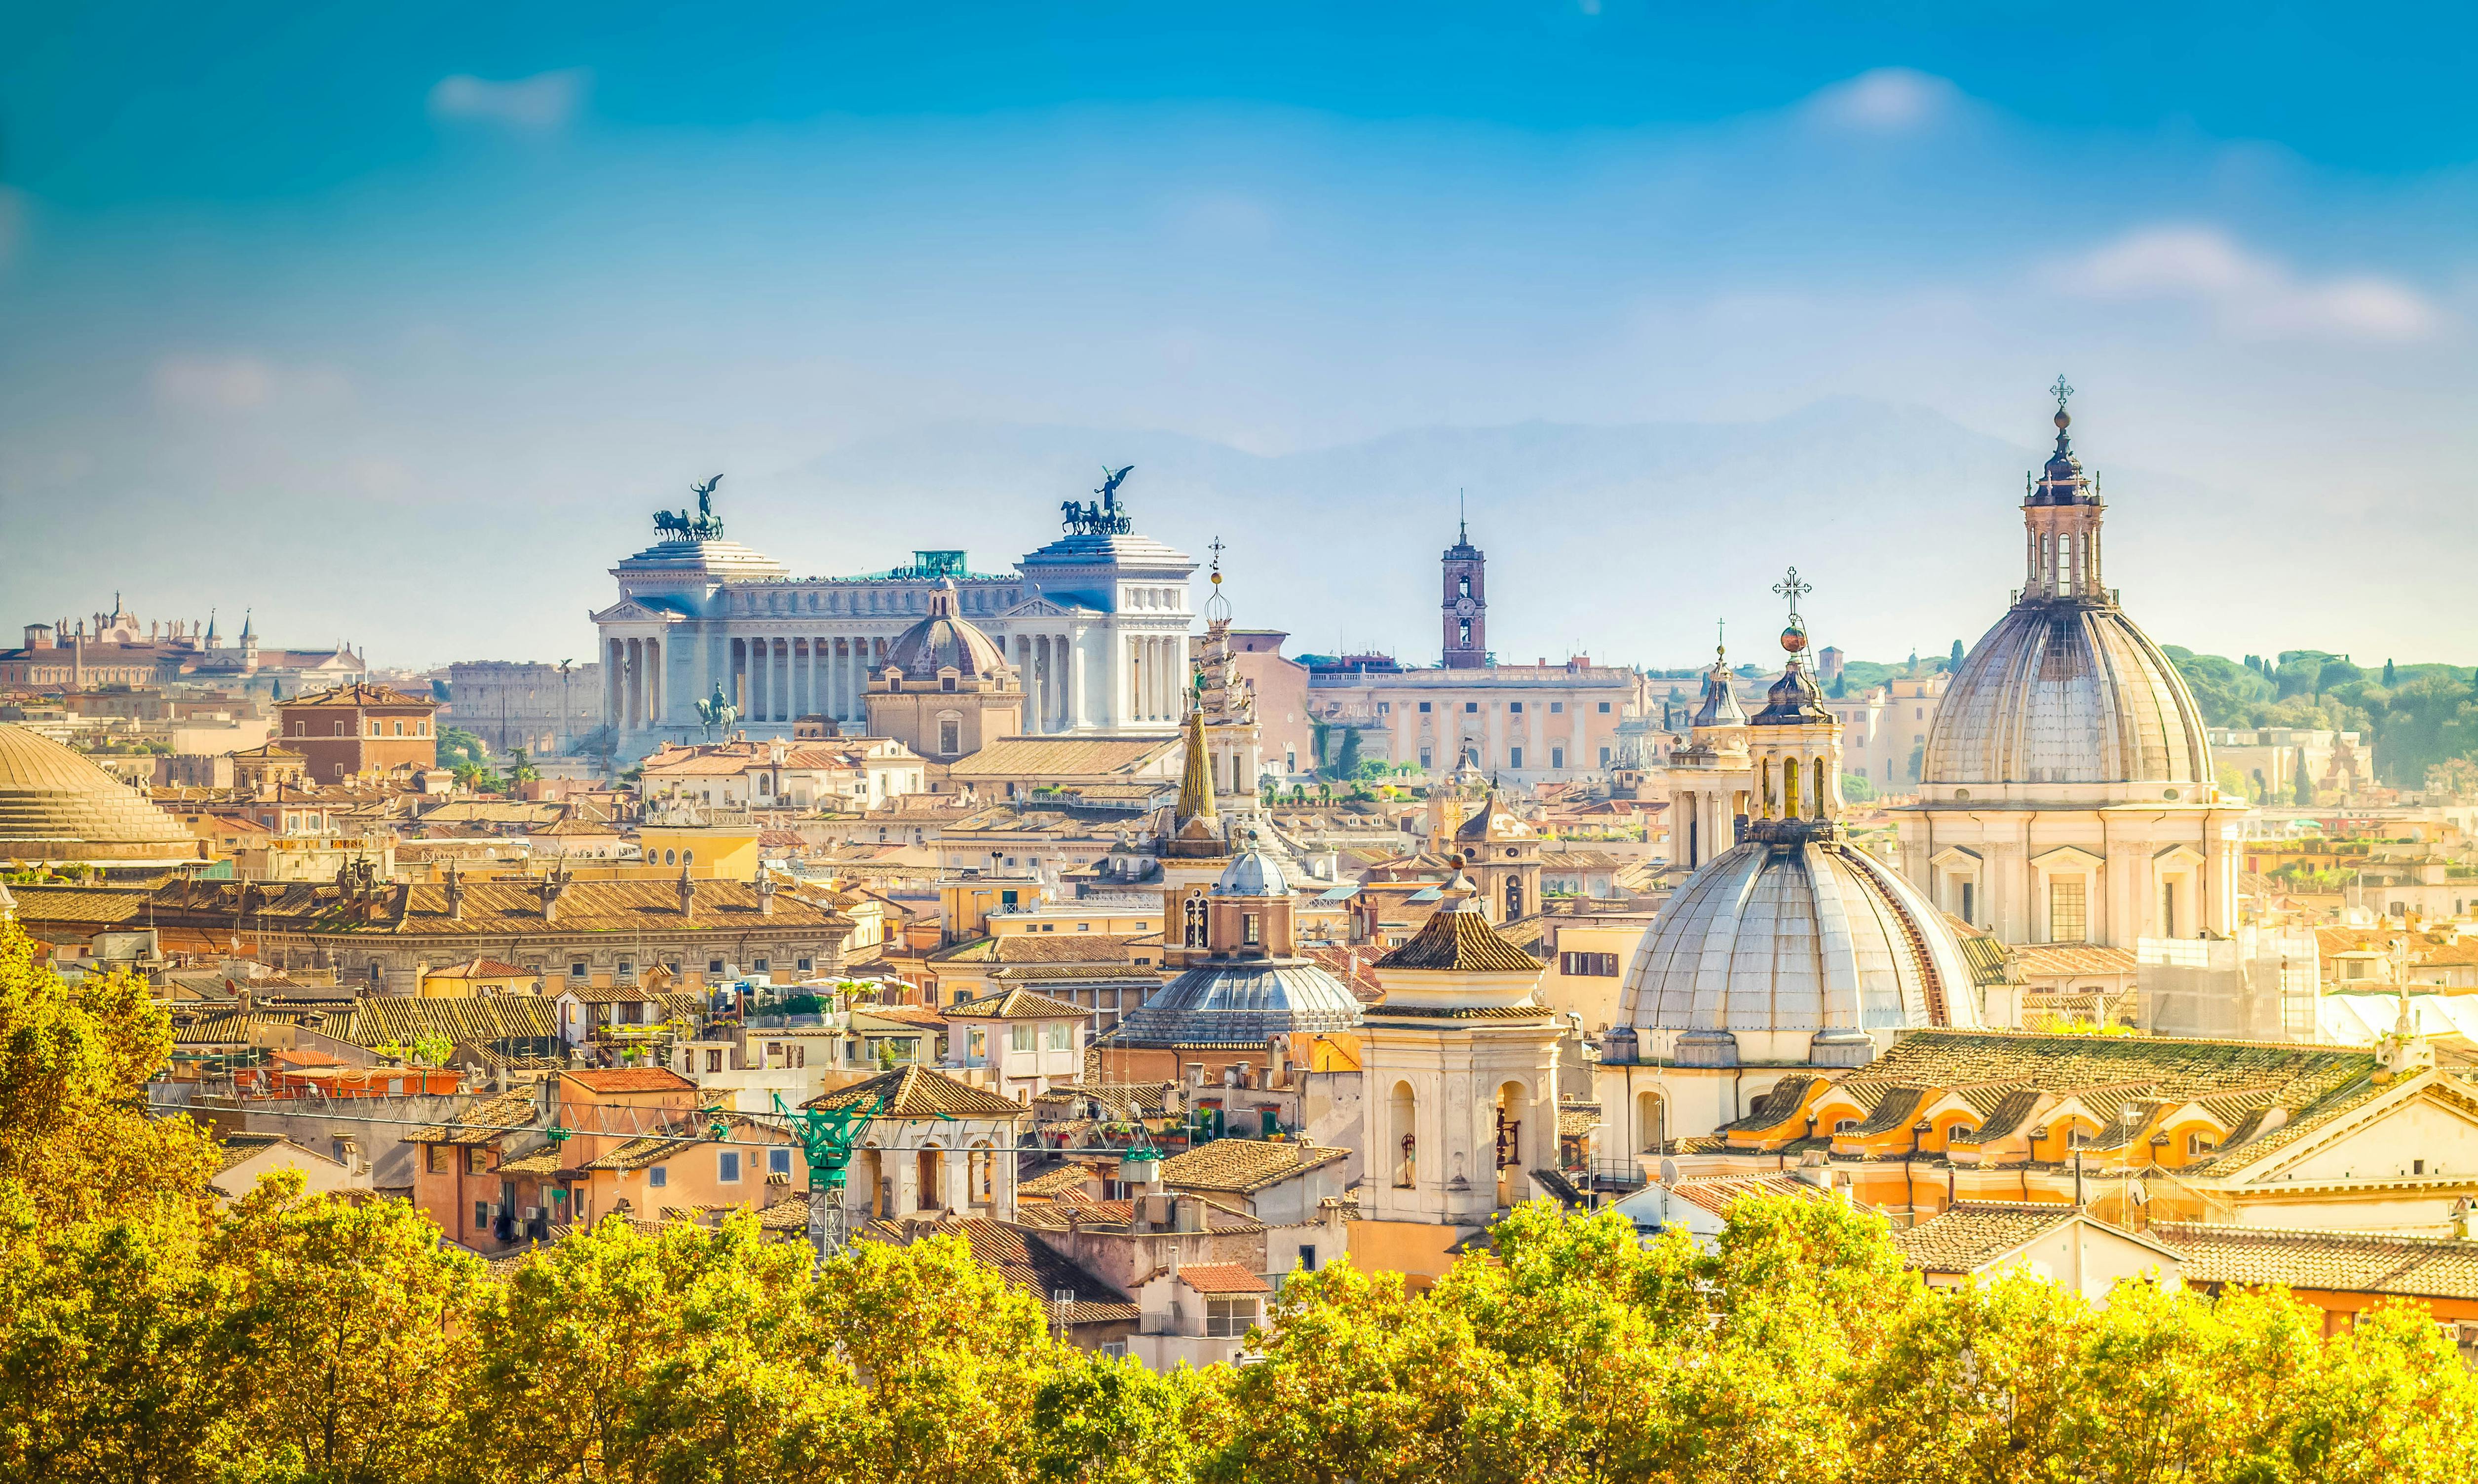 Escape Tour autoguiado, desafío interactivo de la ciudad en Roma